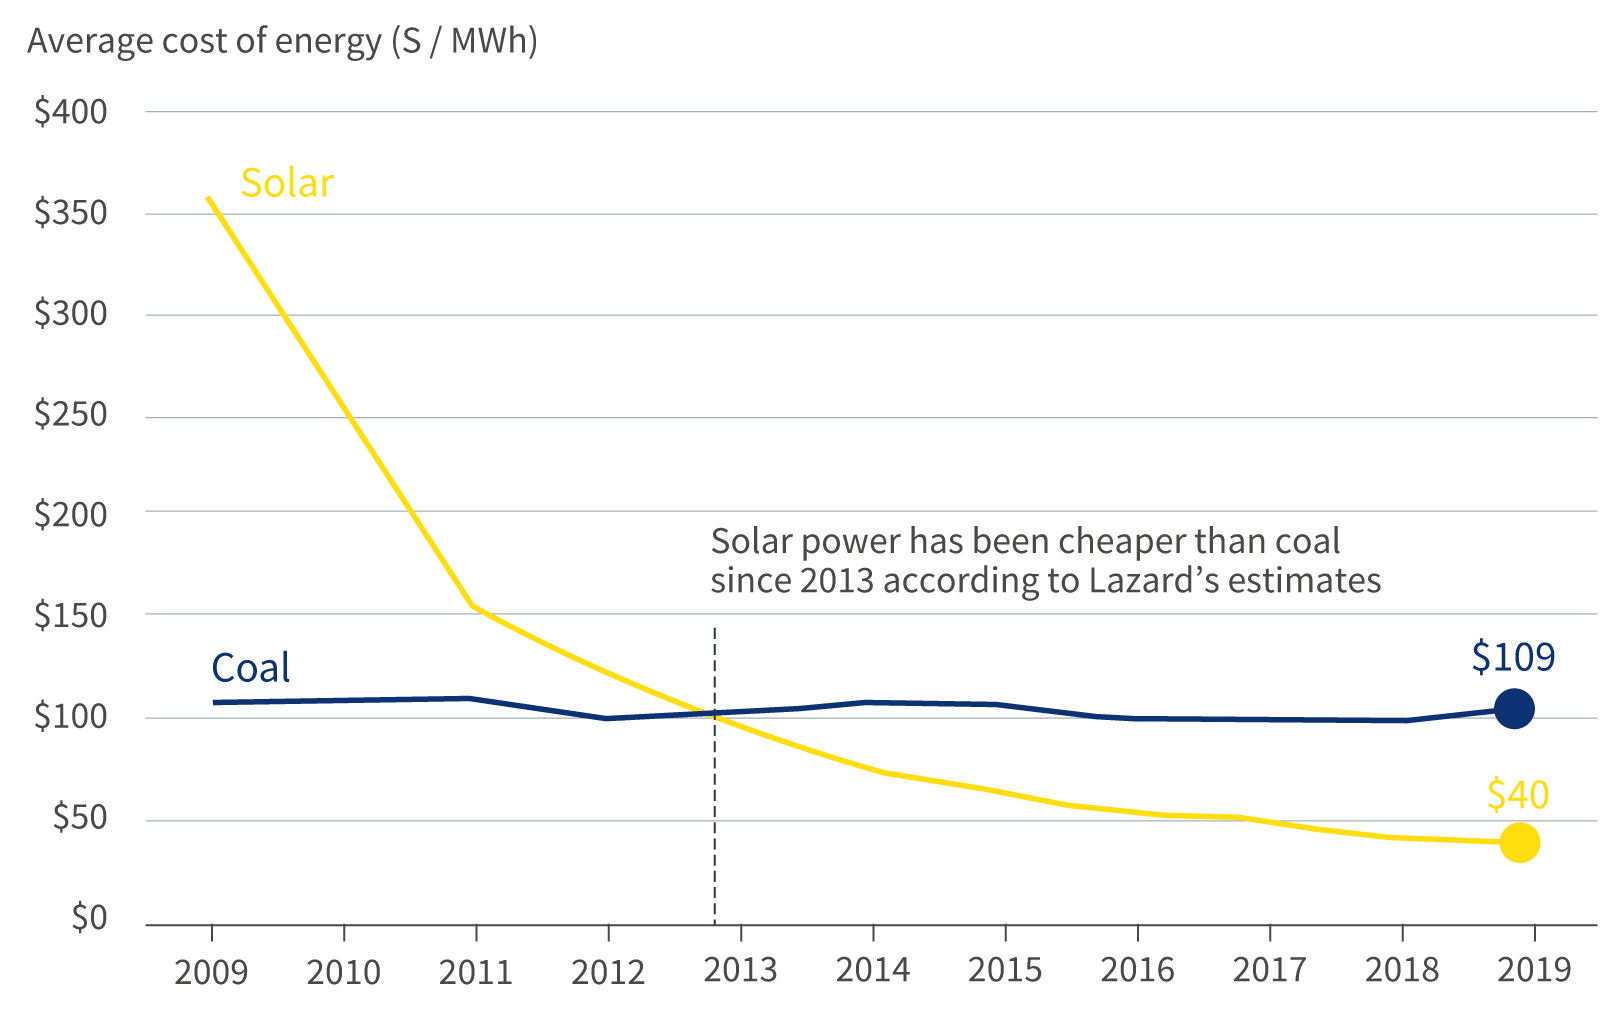 Cost of solar versus coal, 2009-2019